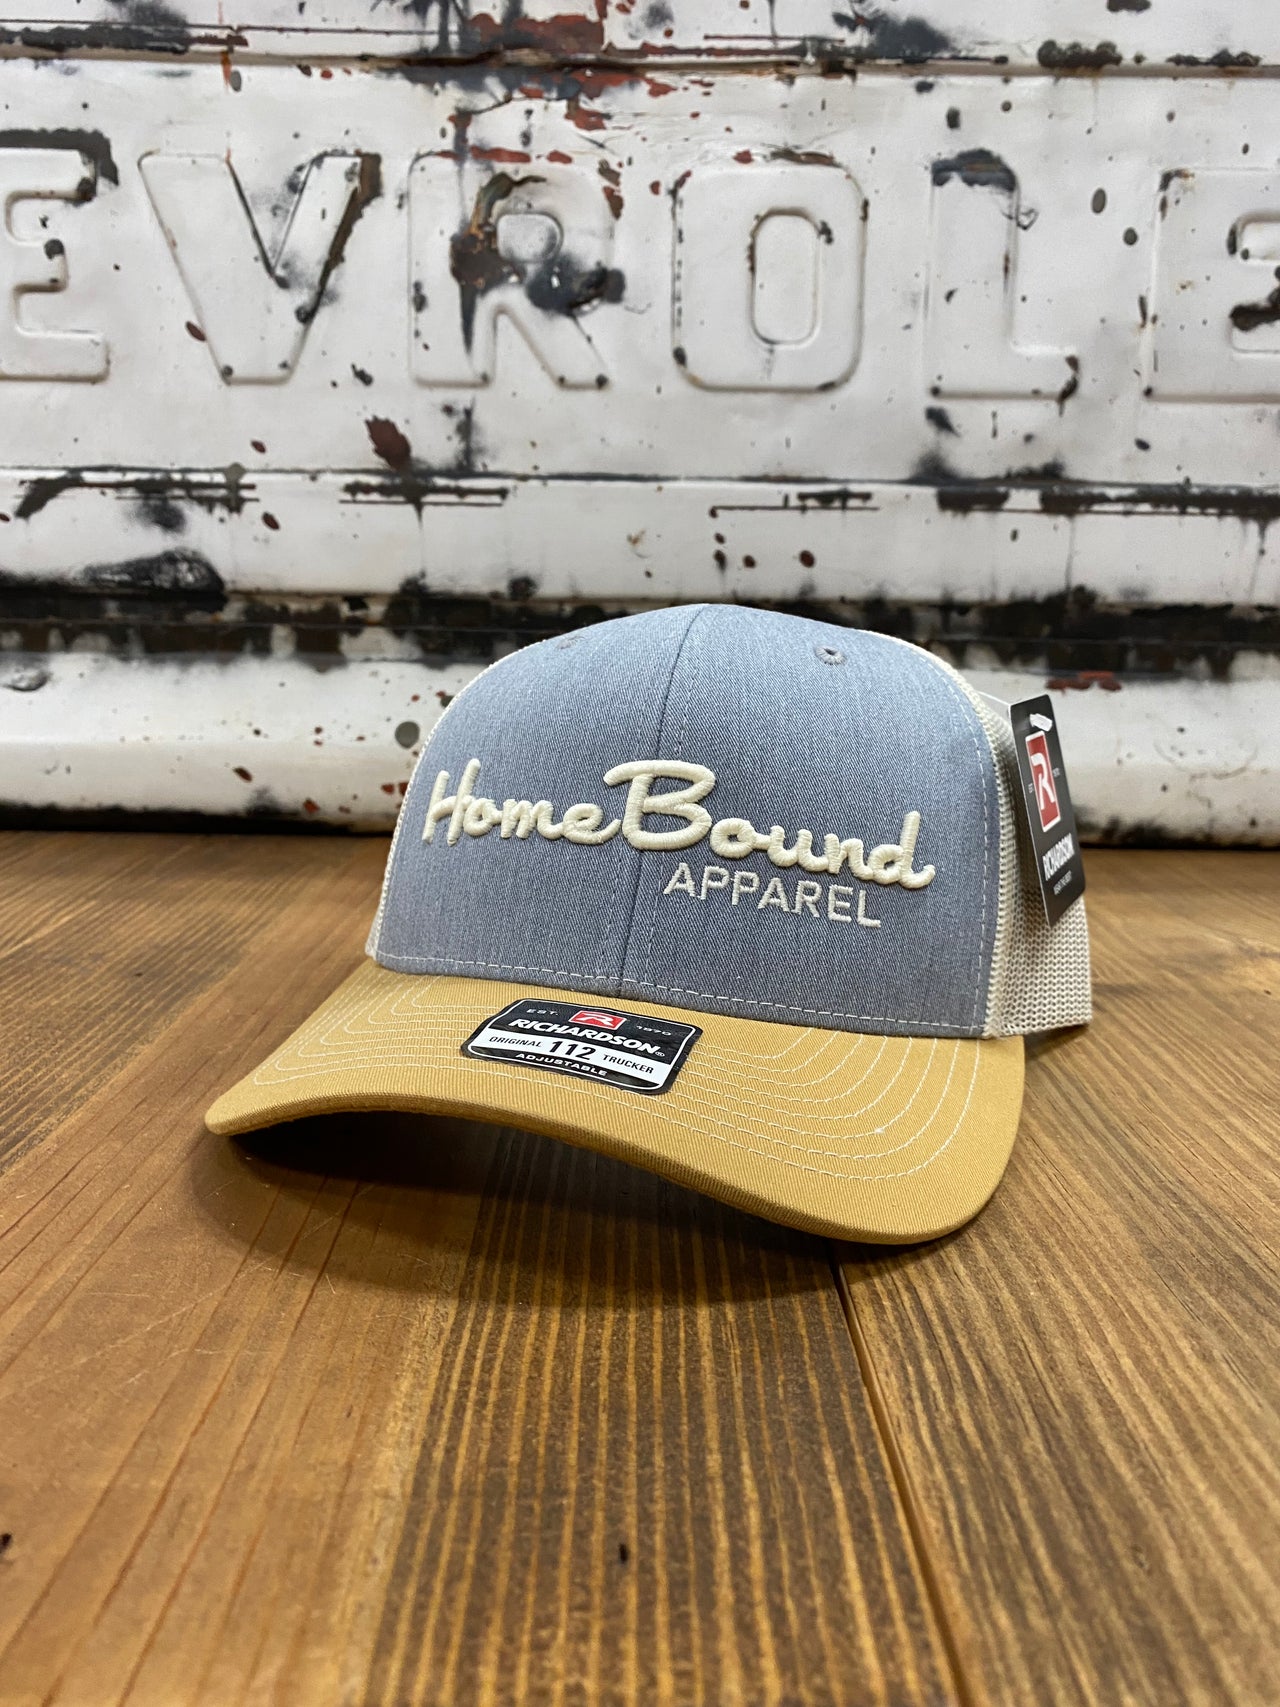 3D Home Bound Apparel Cap